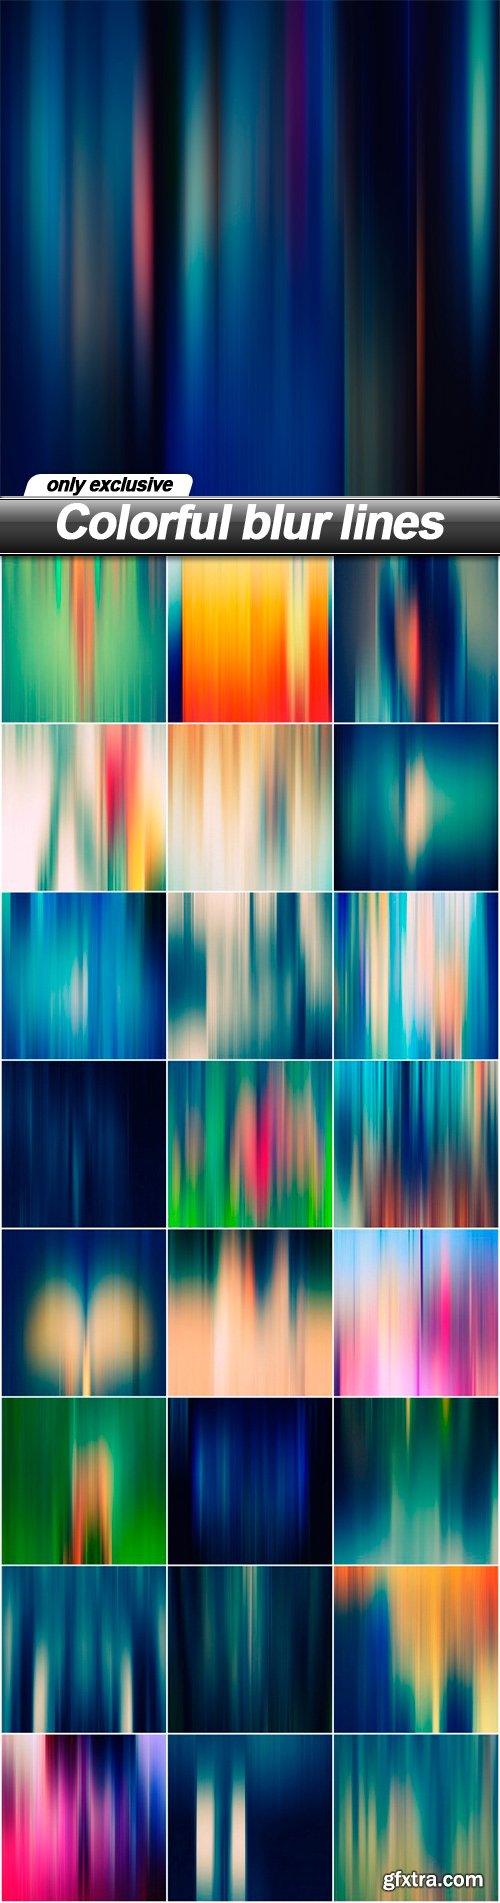 Colorful blur lines - 25 UHQ JPEG